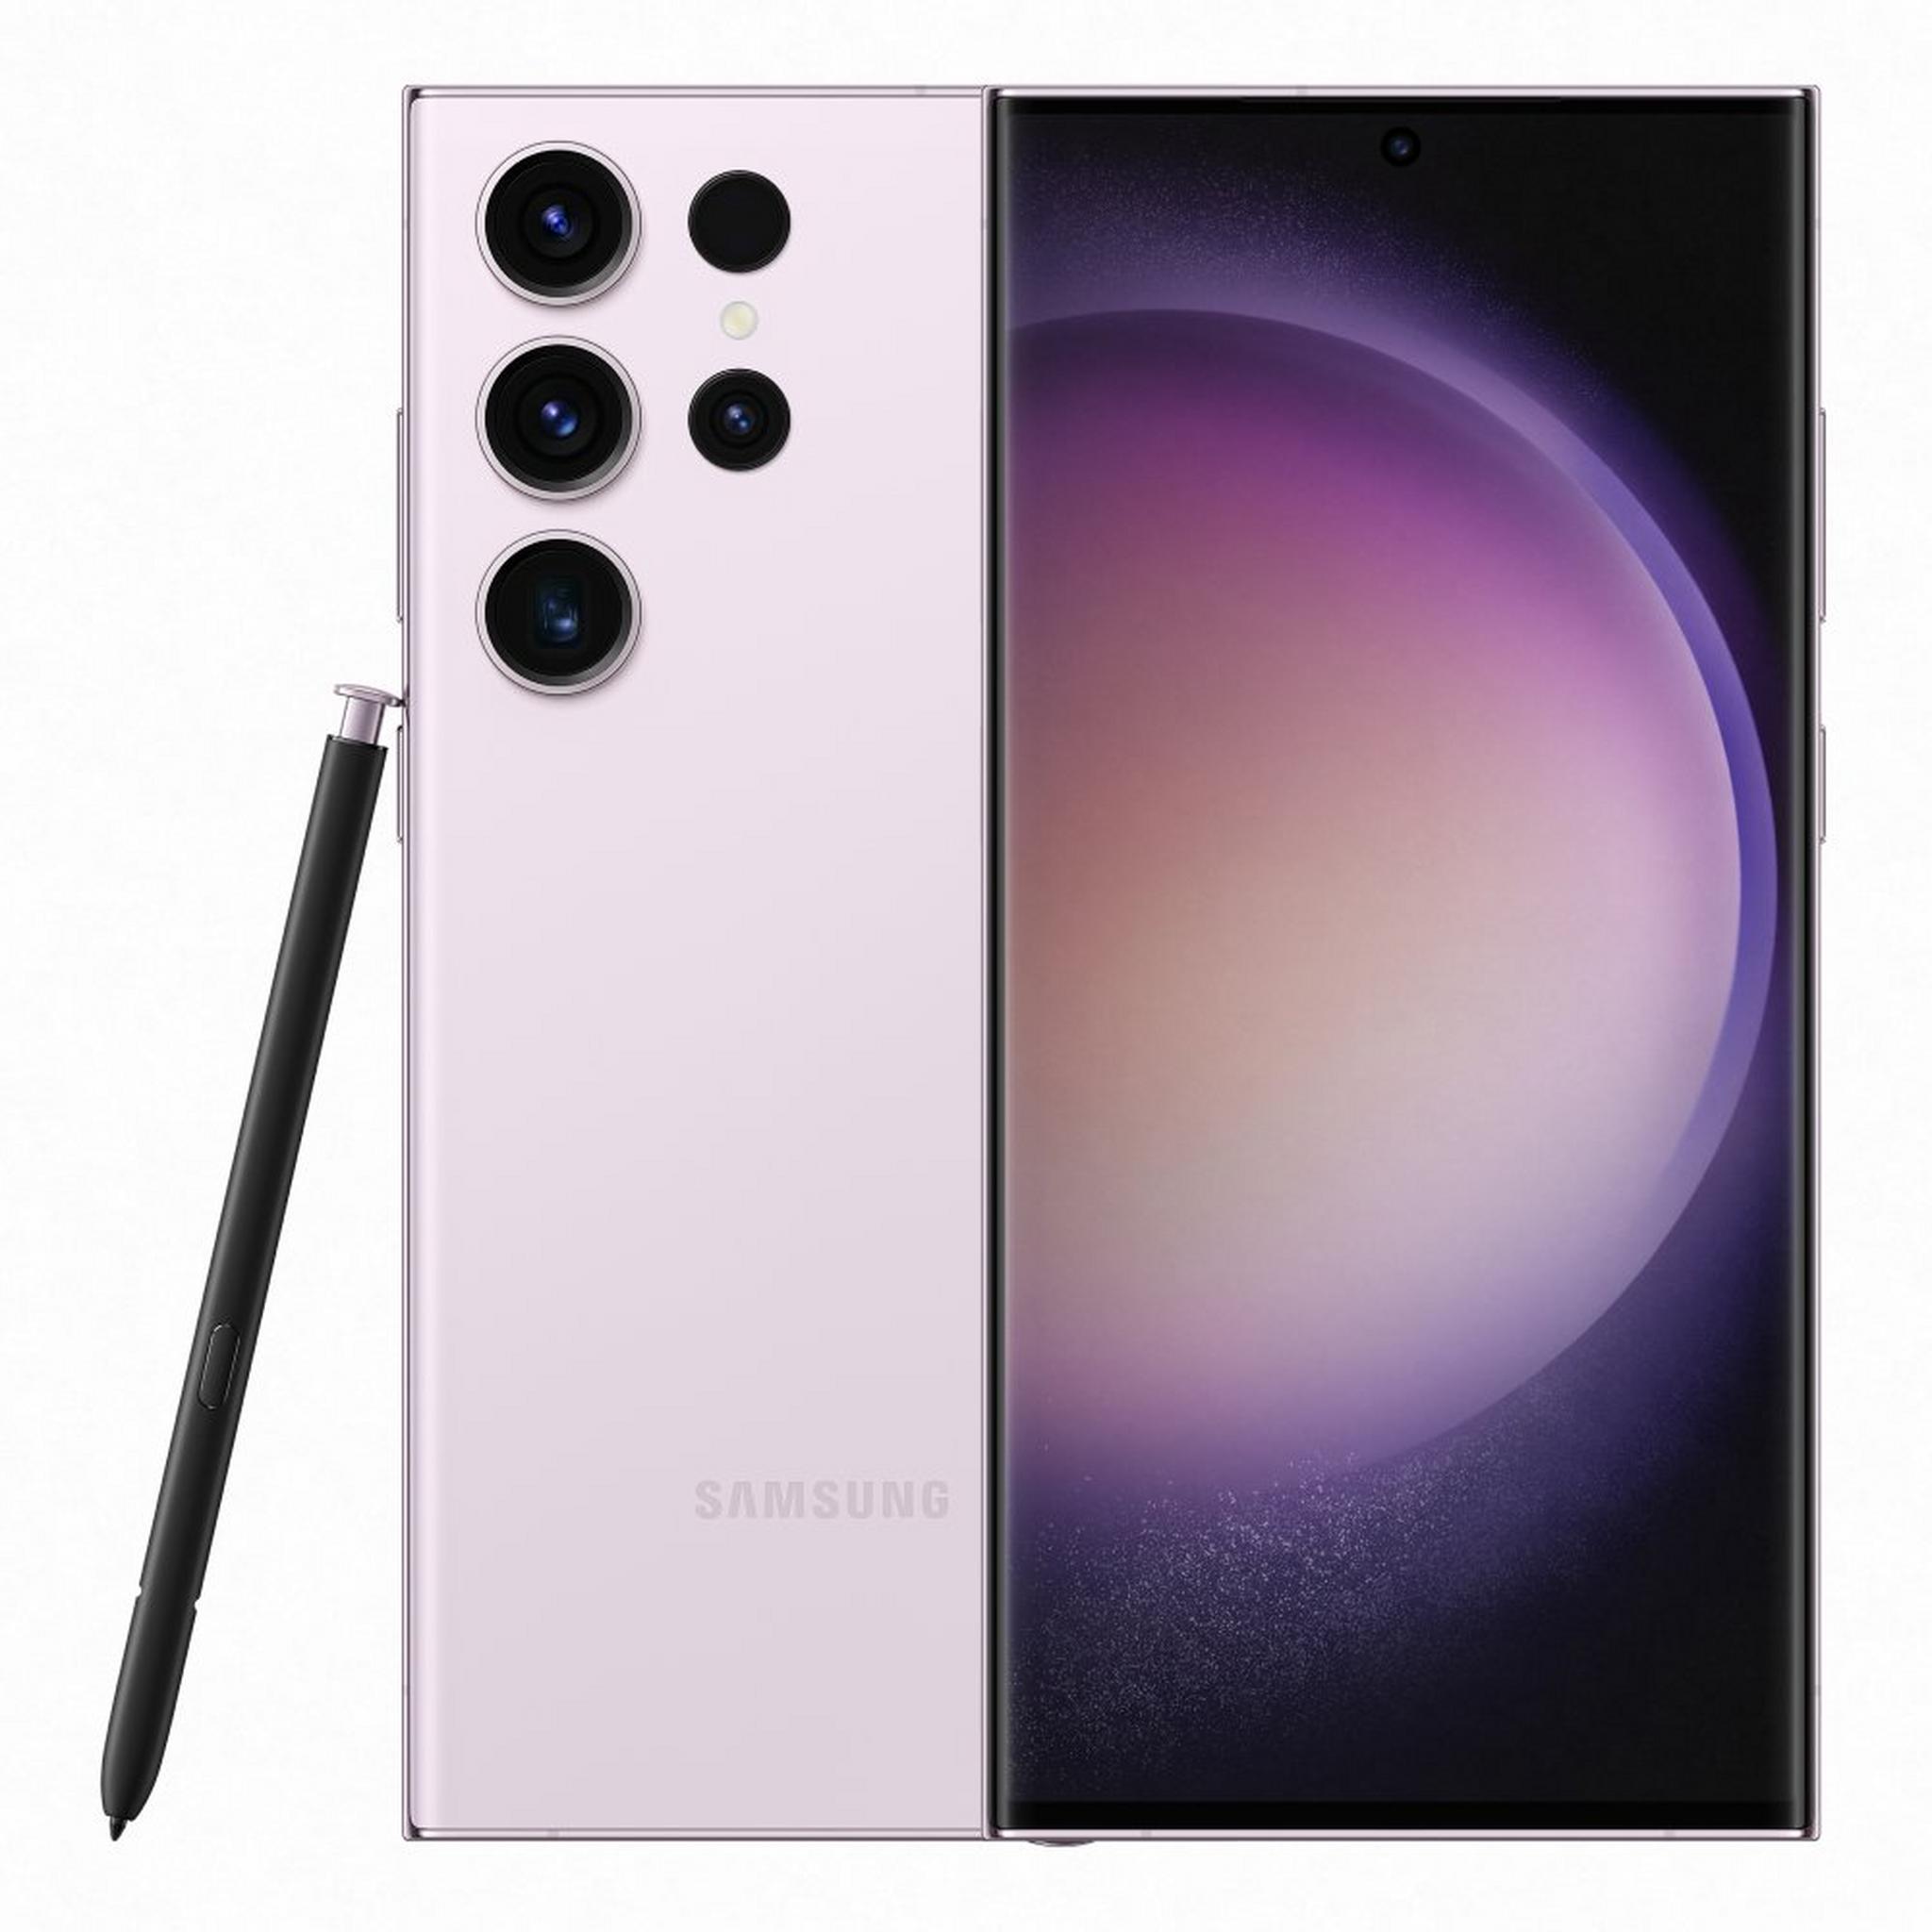 Samsung Galaxy S23 Ultra Phone, 6.8-inch, 512GB, 12GB RAM - Lavender